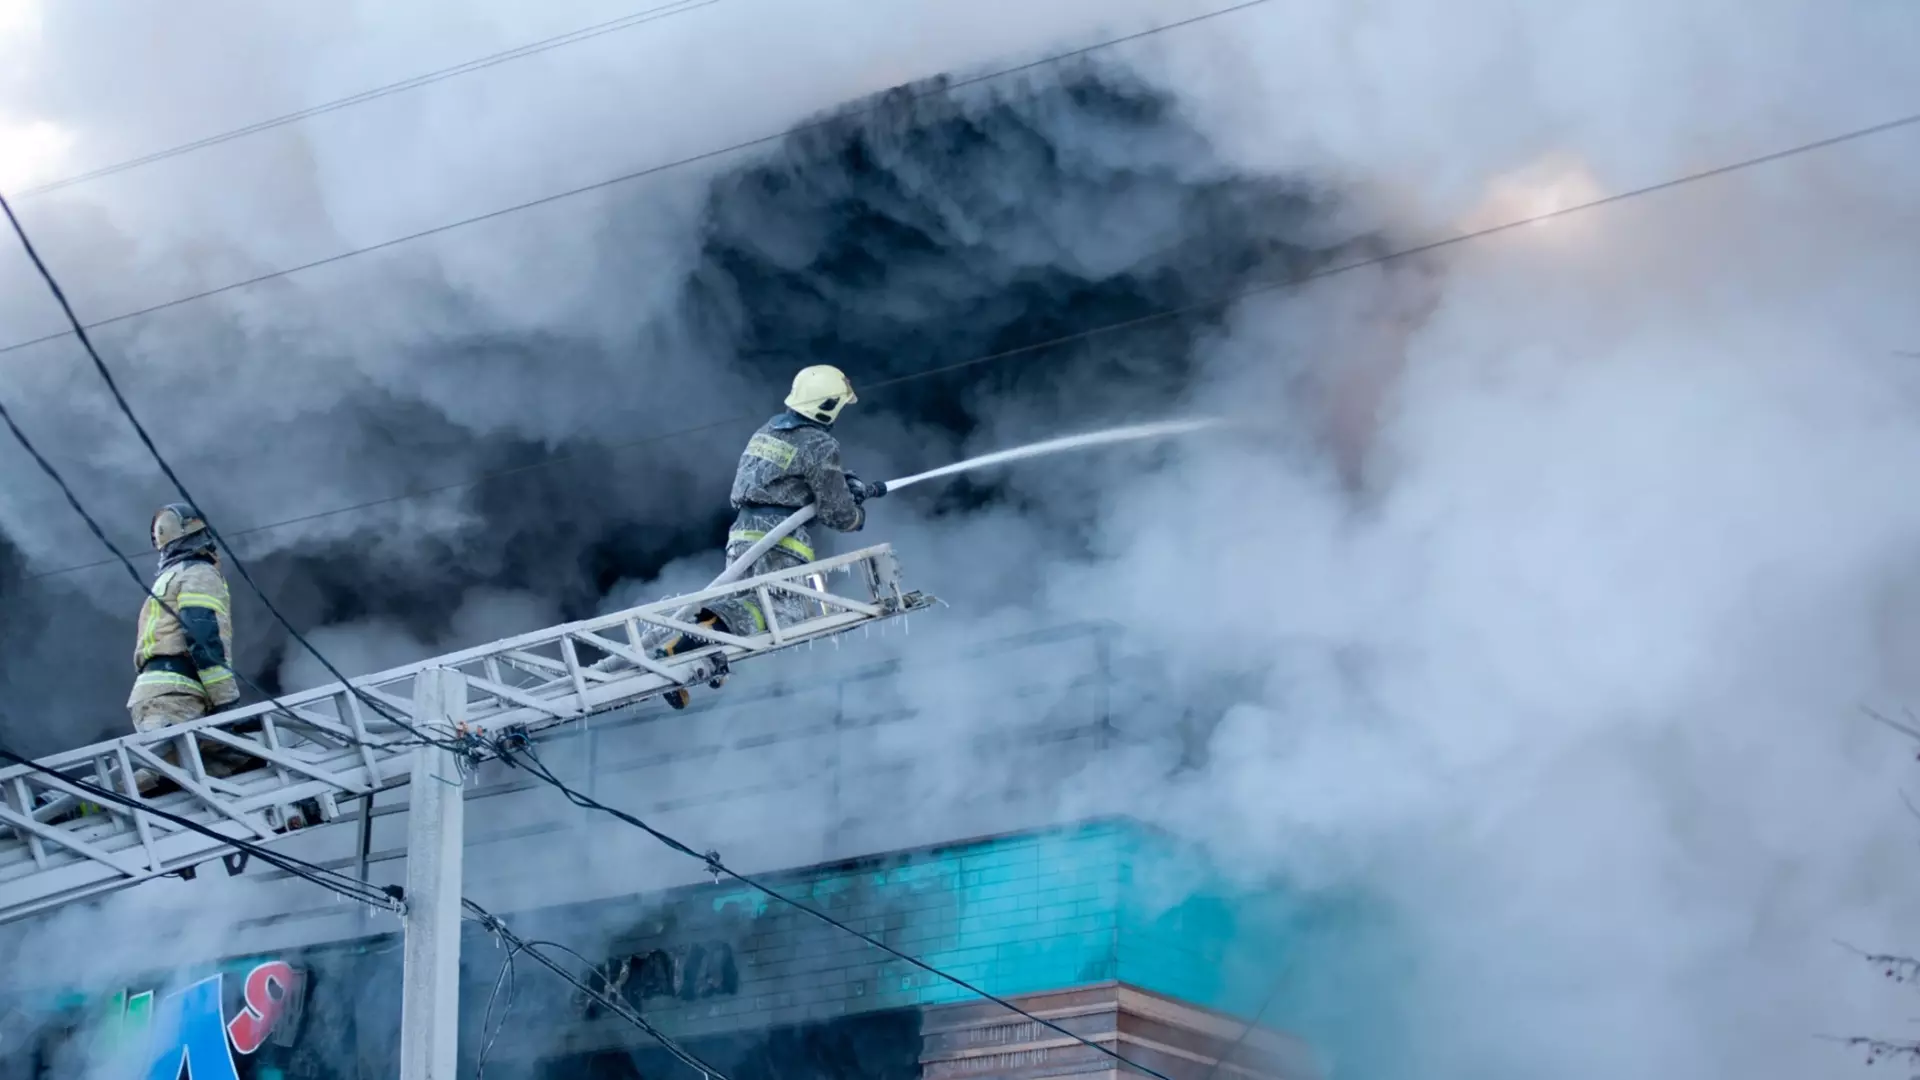 Когда спасатели прибыли на место тушения пожара, наблюдался густой дым